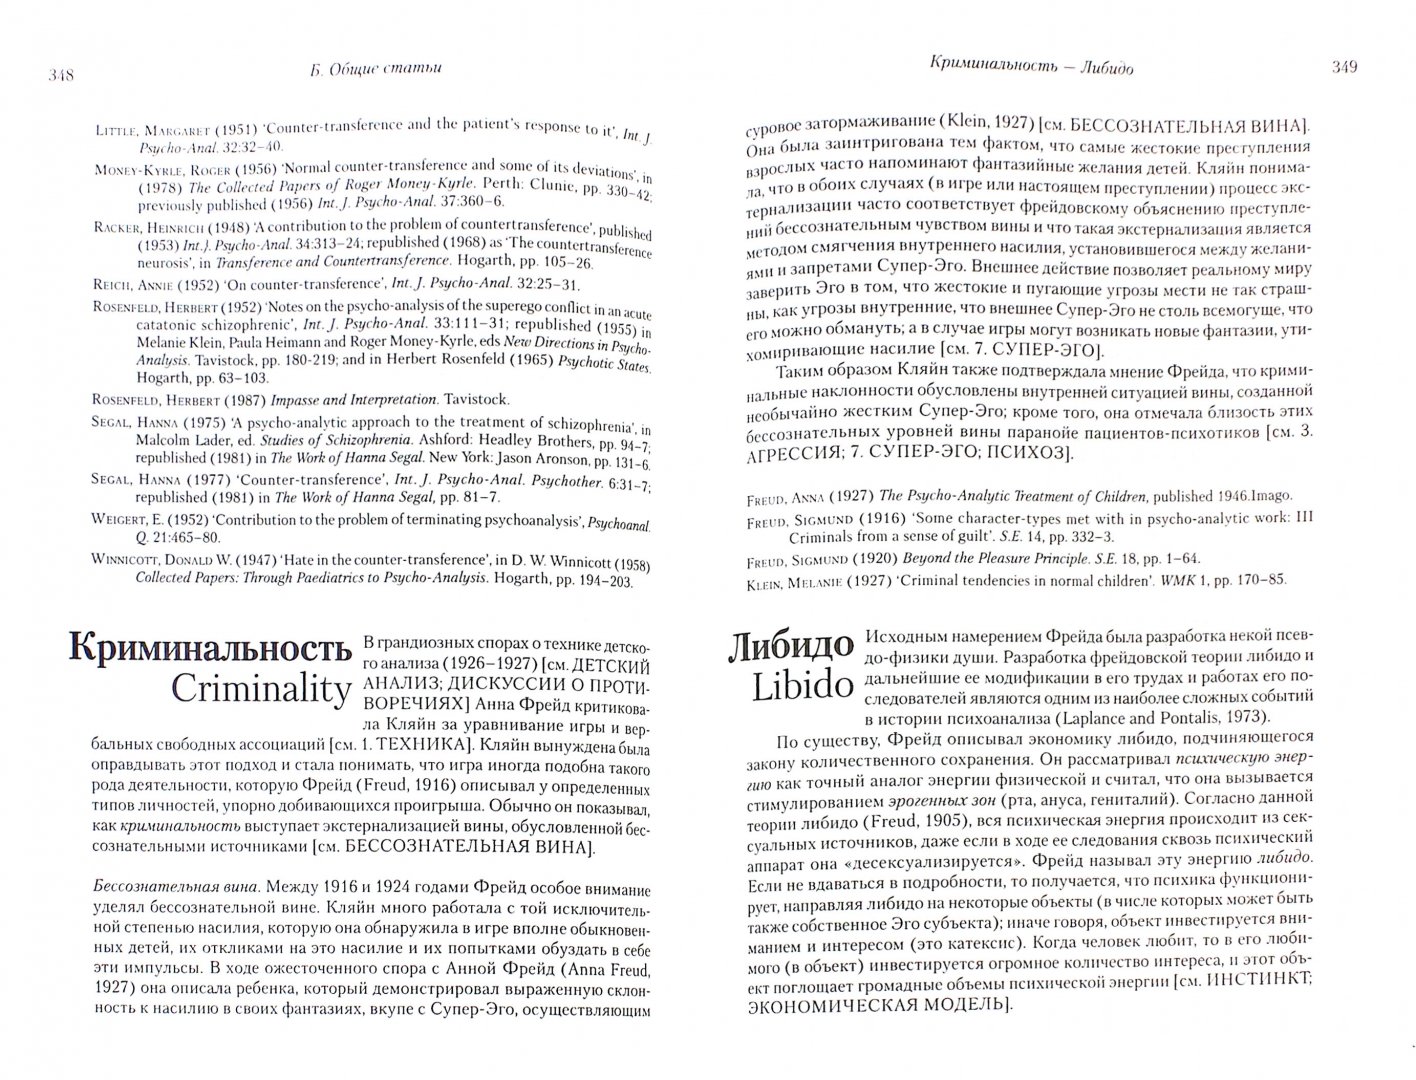 Иллюстрация 1 из 22 для Словарь кляйнианского психоанализа - Роберт Хиншелвуд | Лабиринт - книги. Источник: Лабиринт